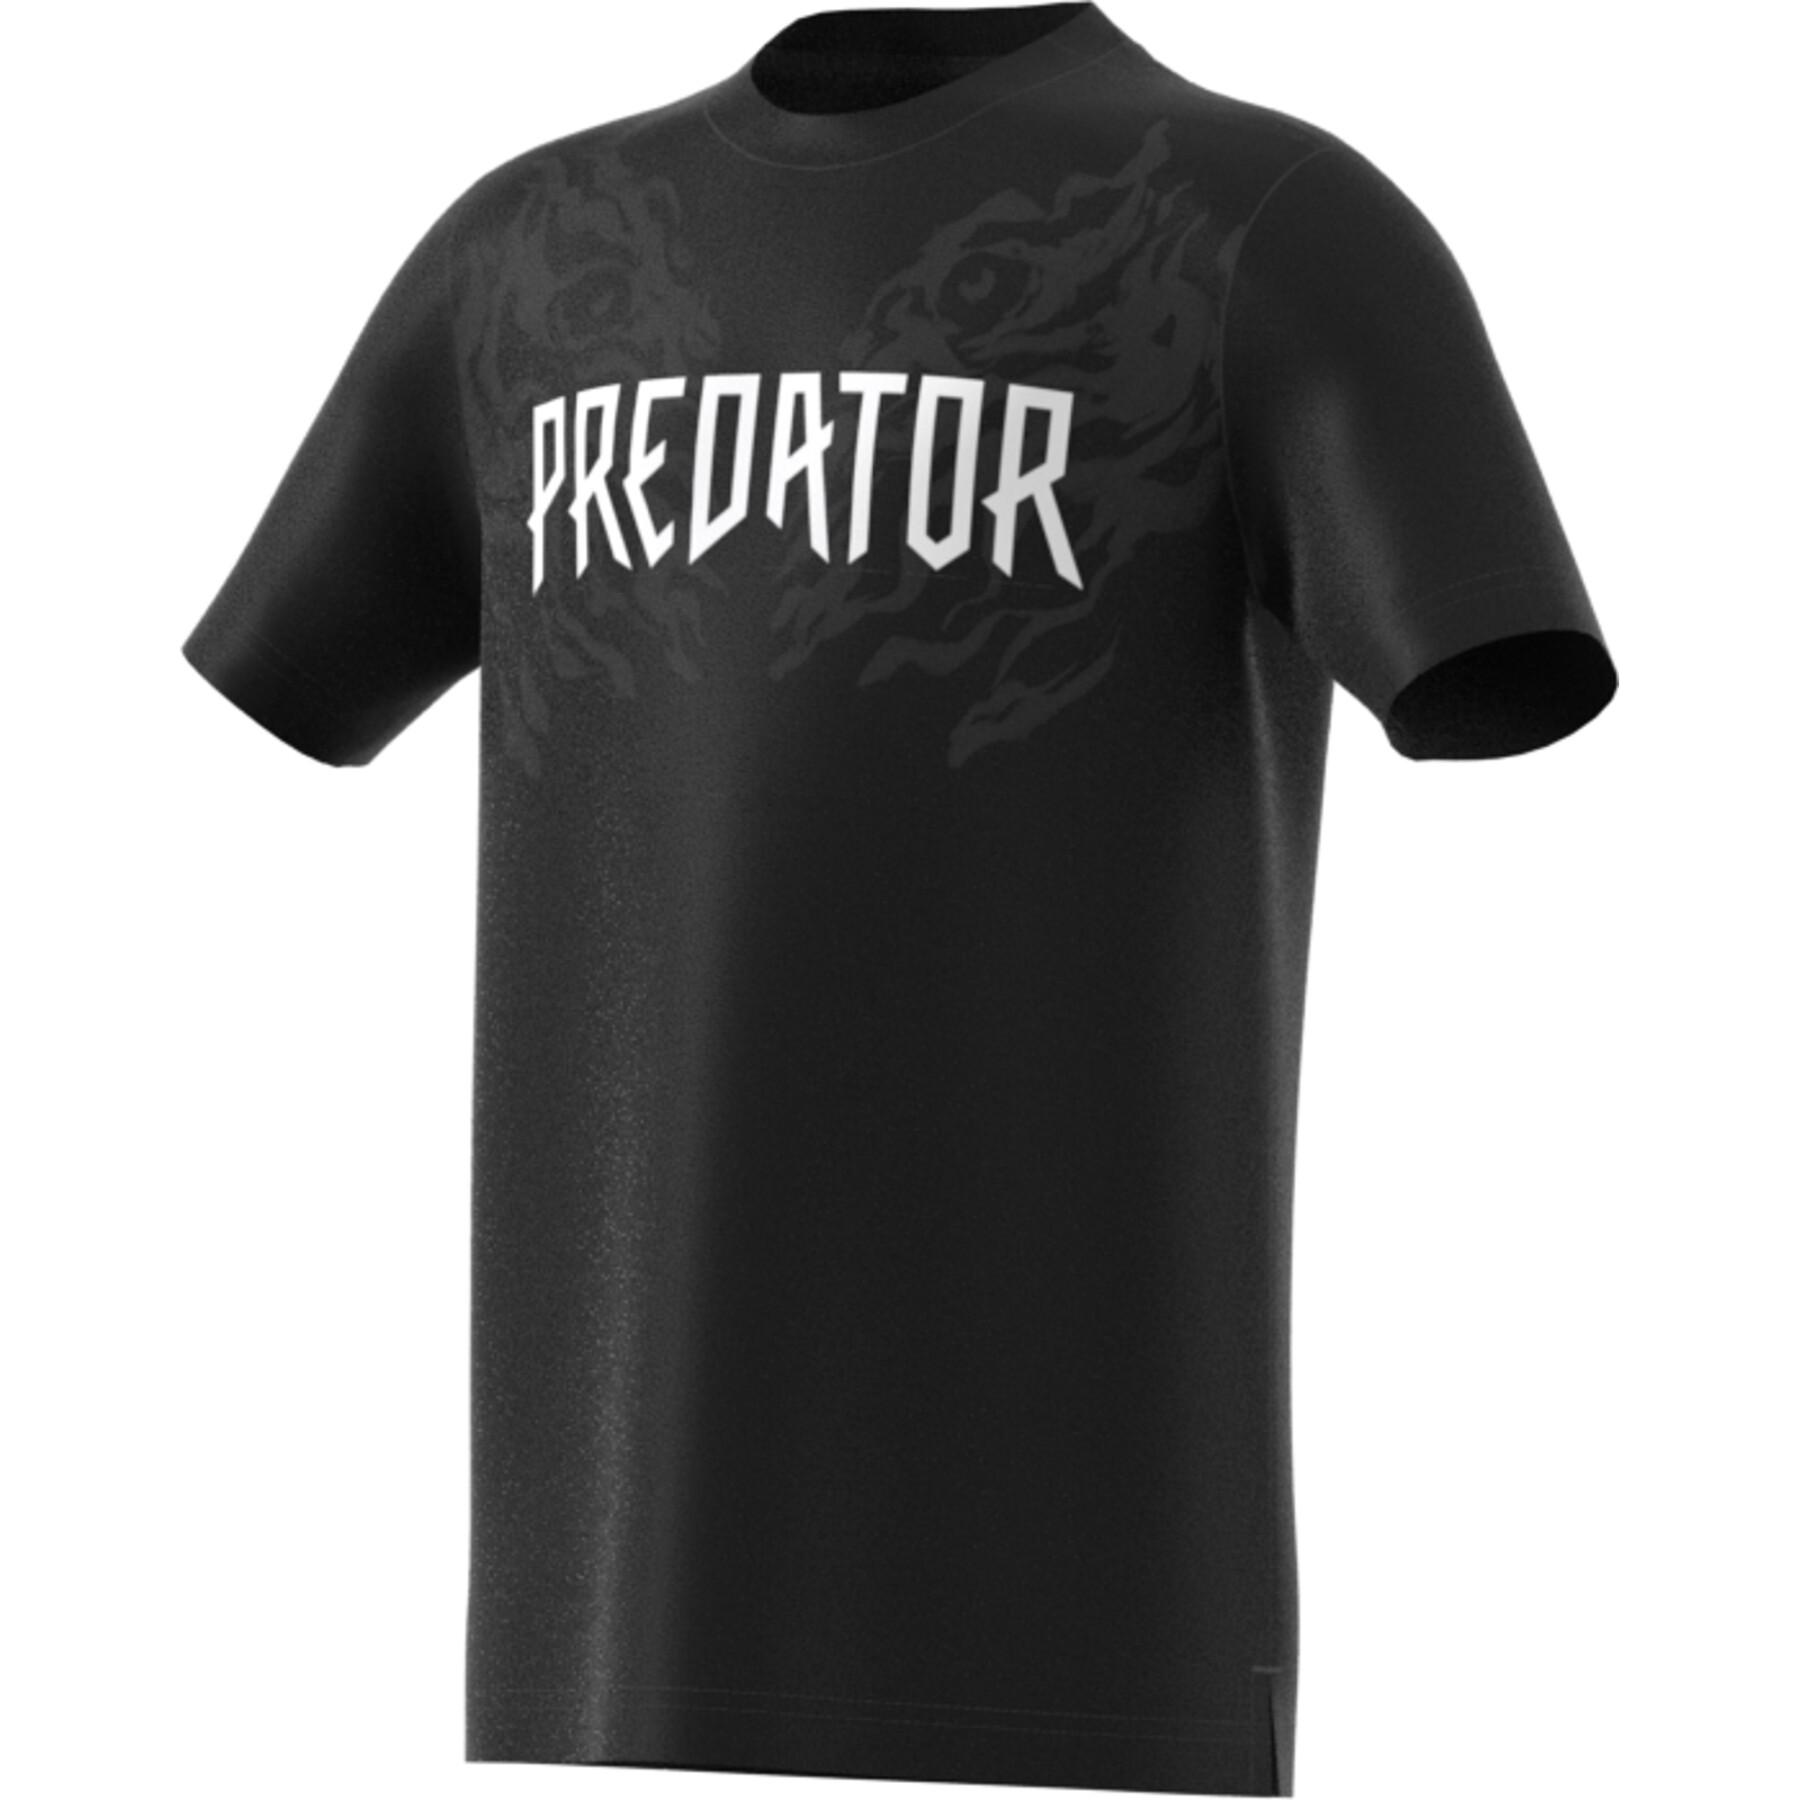 T-shirt enfant adidas Predator Graphics